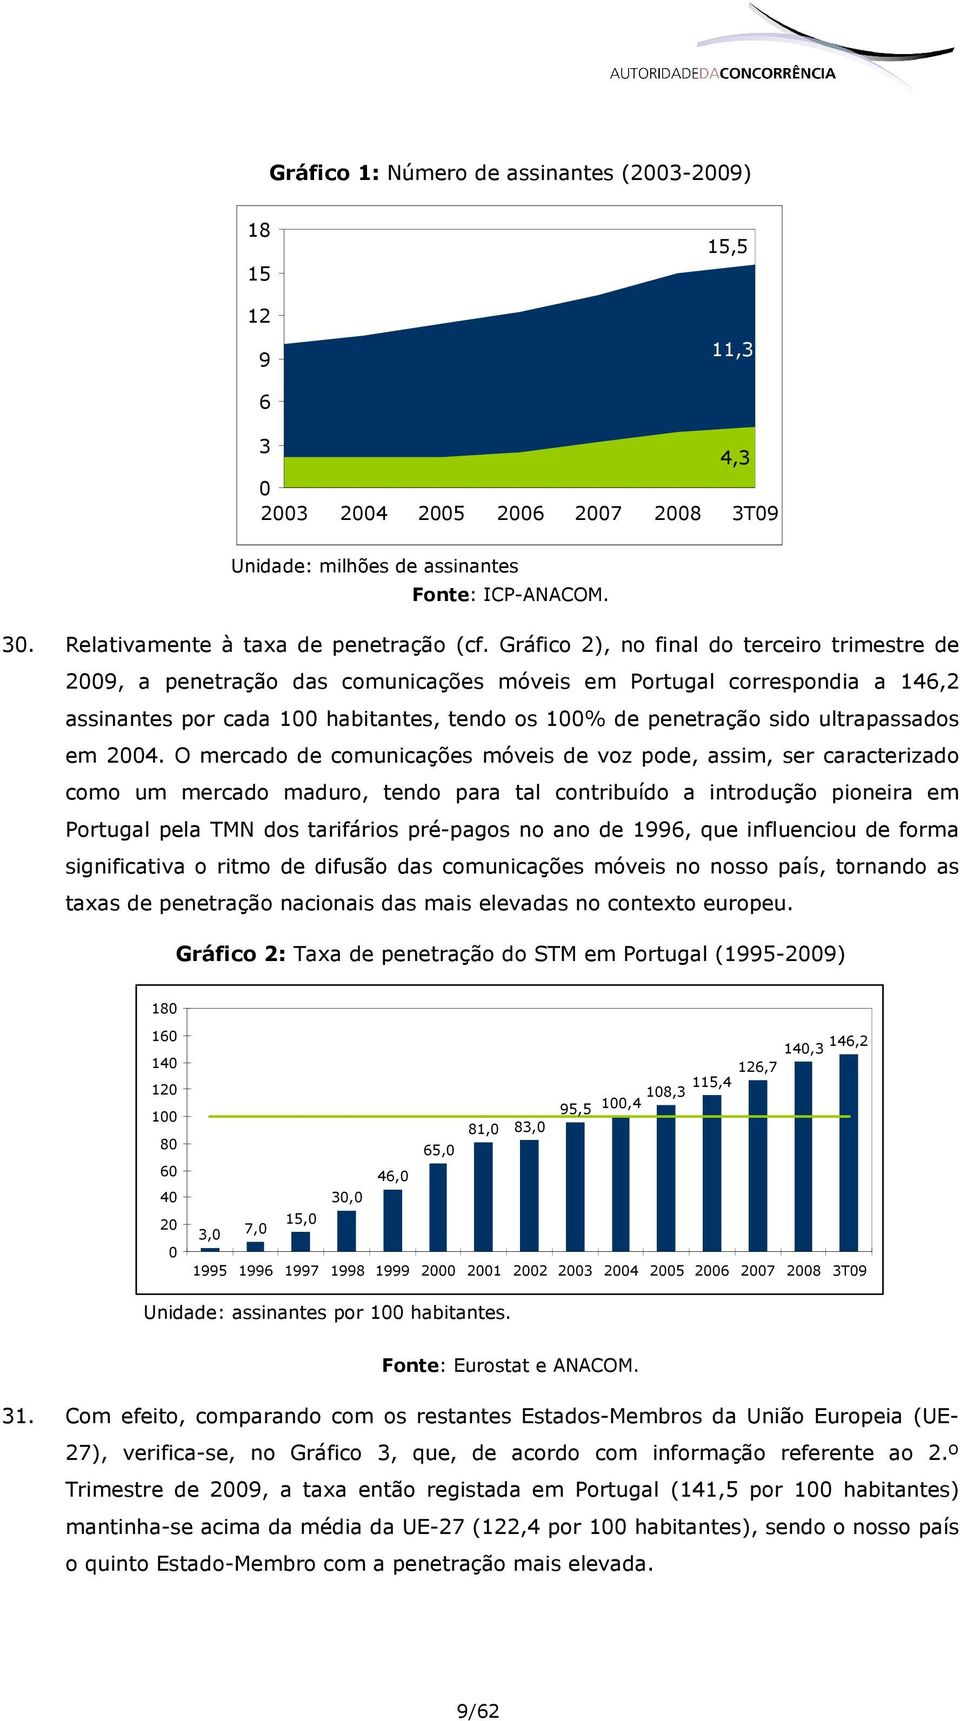 Gráfico 2), no final do terceiro trimestre de 2009, a penetração das comunicações móveis em Portugal correspondia a 146,2 assinantes por cada 100 habitantes, tendo os 100% de penetração sido